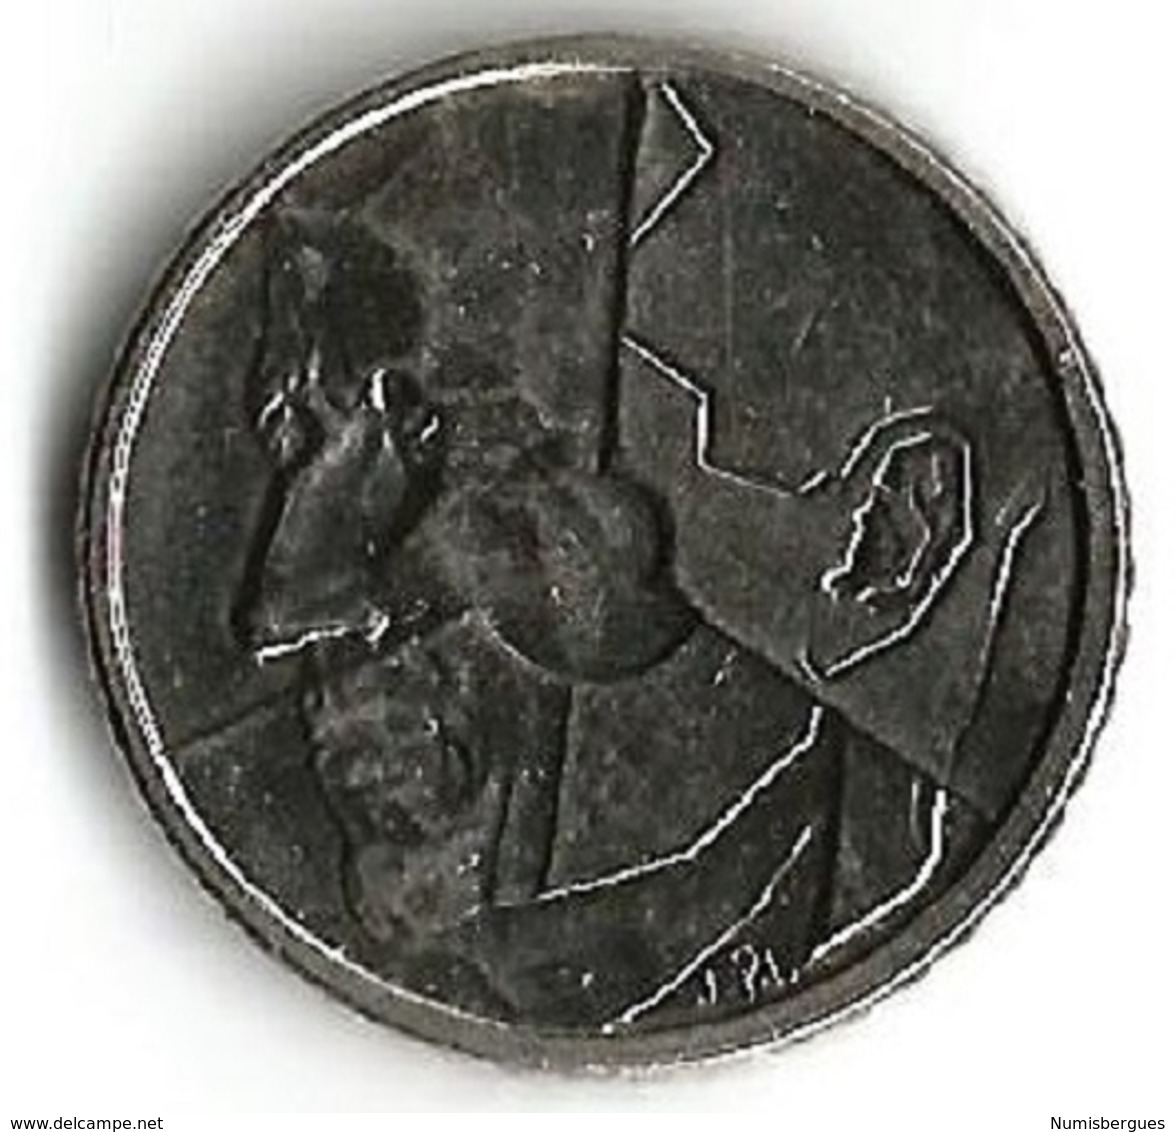 1 Pièce De Monnaie 50 Francs 1992  V  Française - 50 Francs